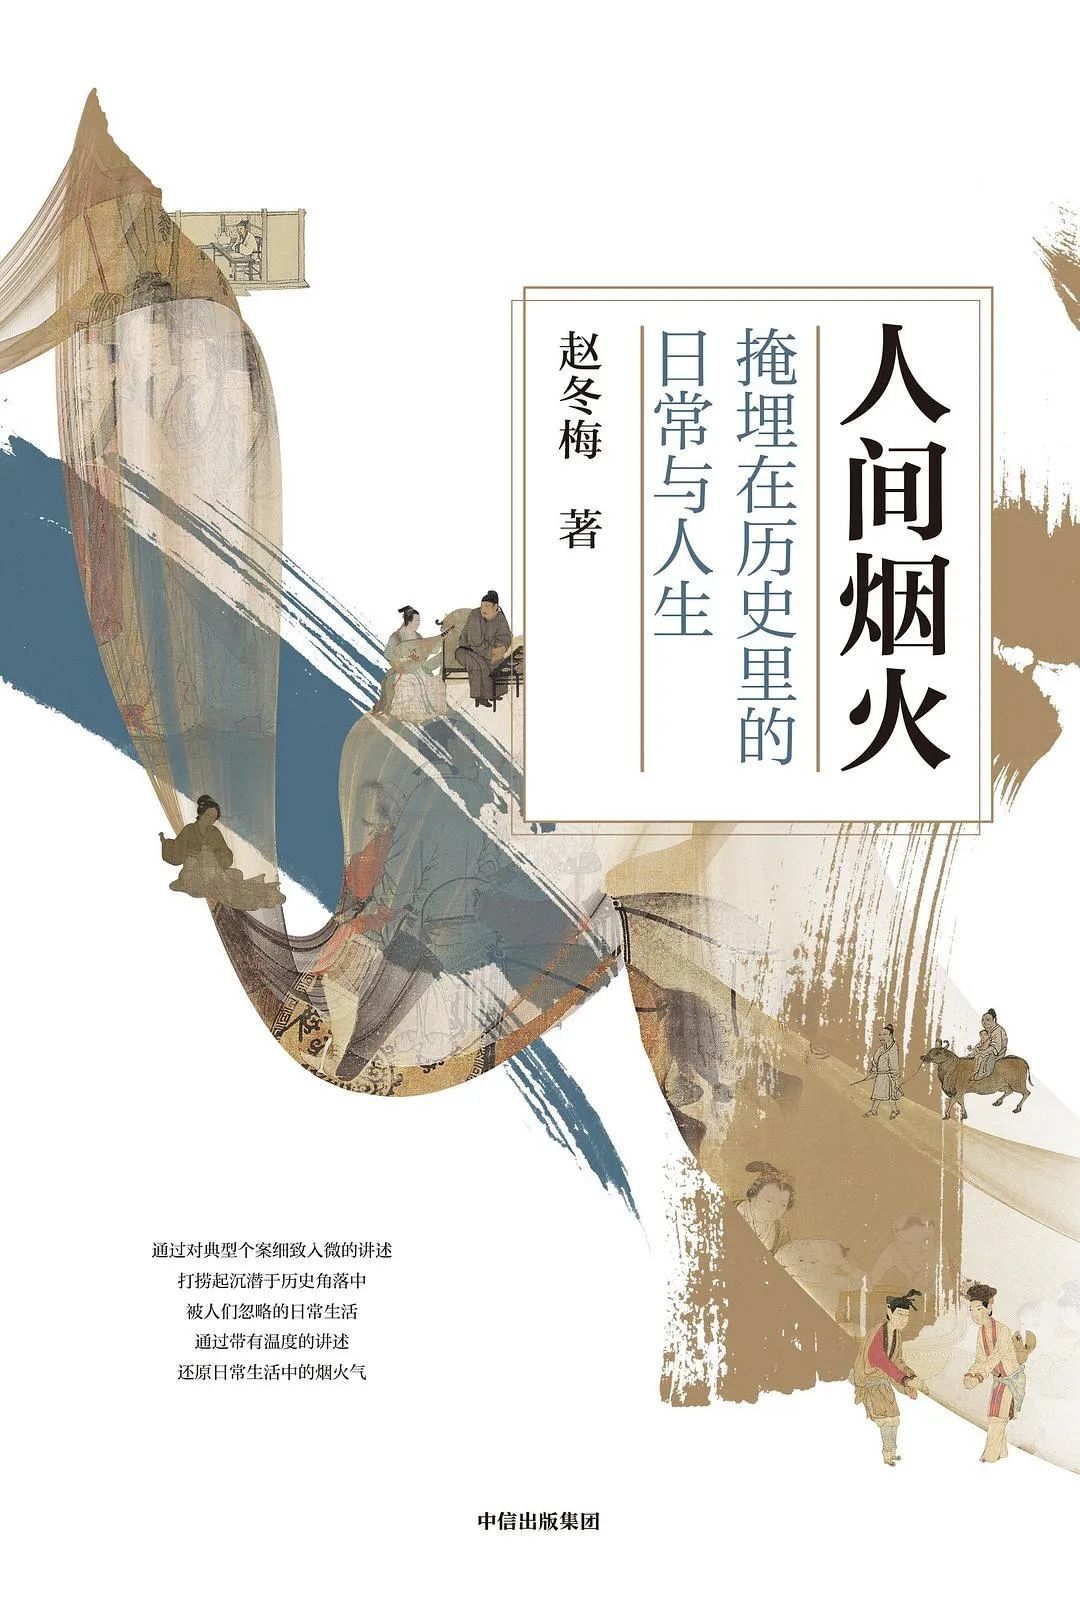 《人间烟火：掩埋在历史里的日常与人生》，赵冬梅 著，中信出版集团，2021年4月。